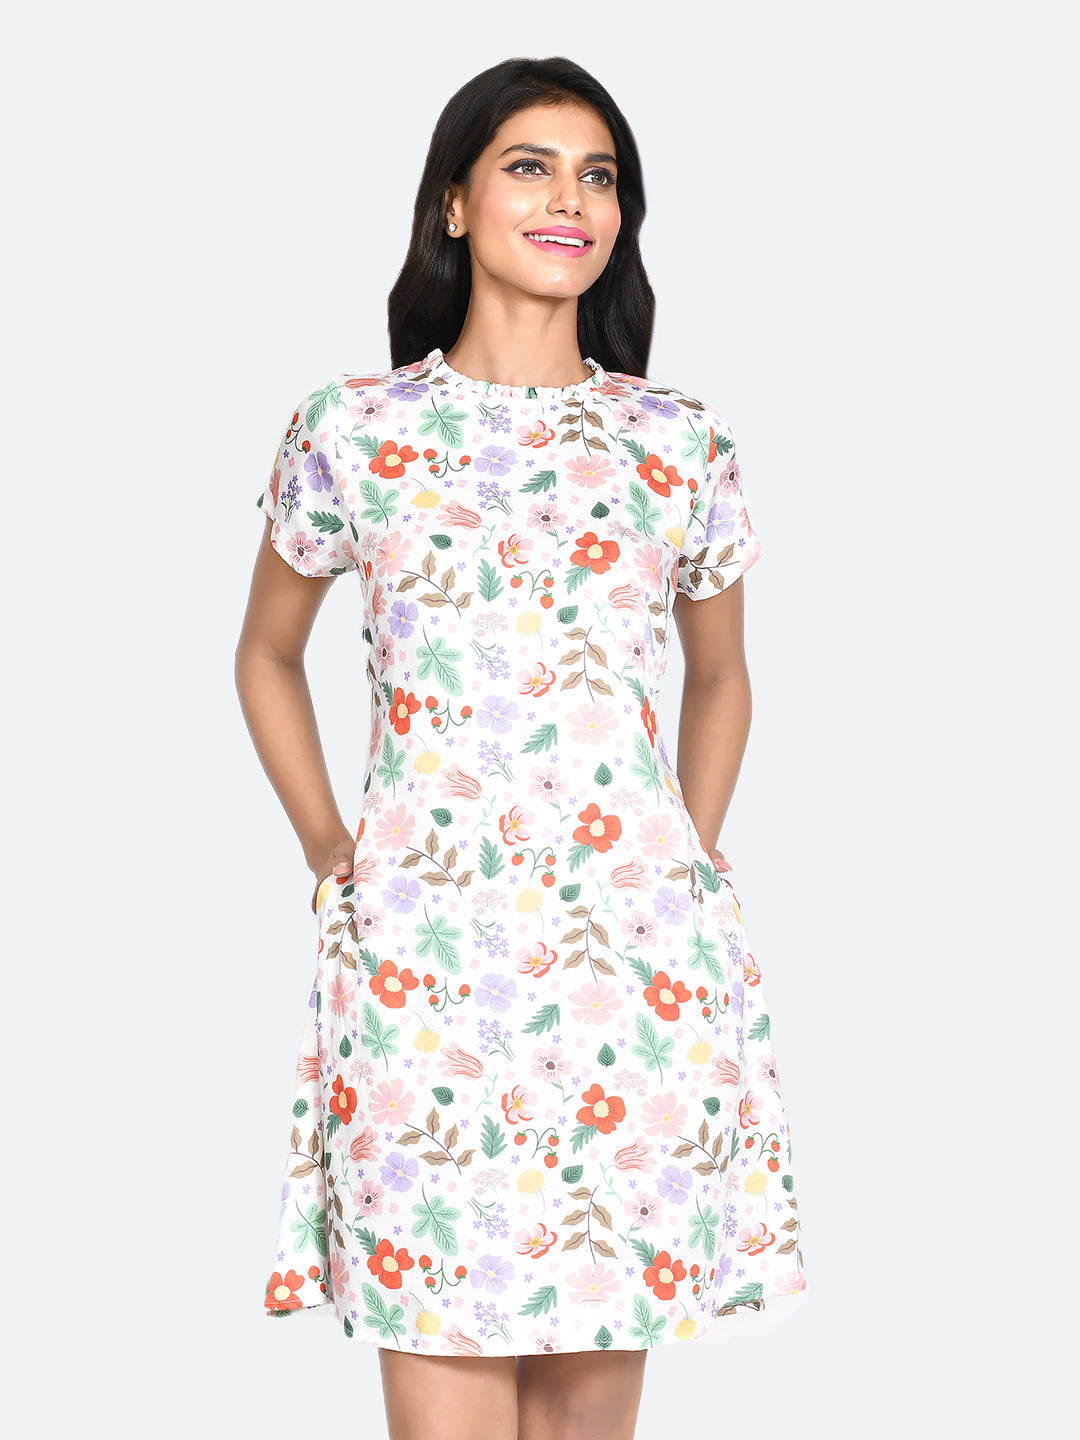 White Printed Short Dress For Women